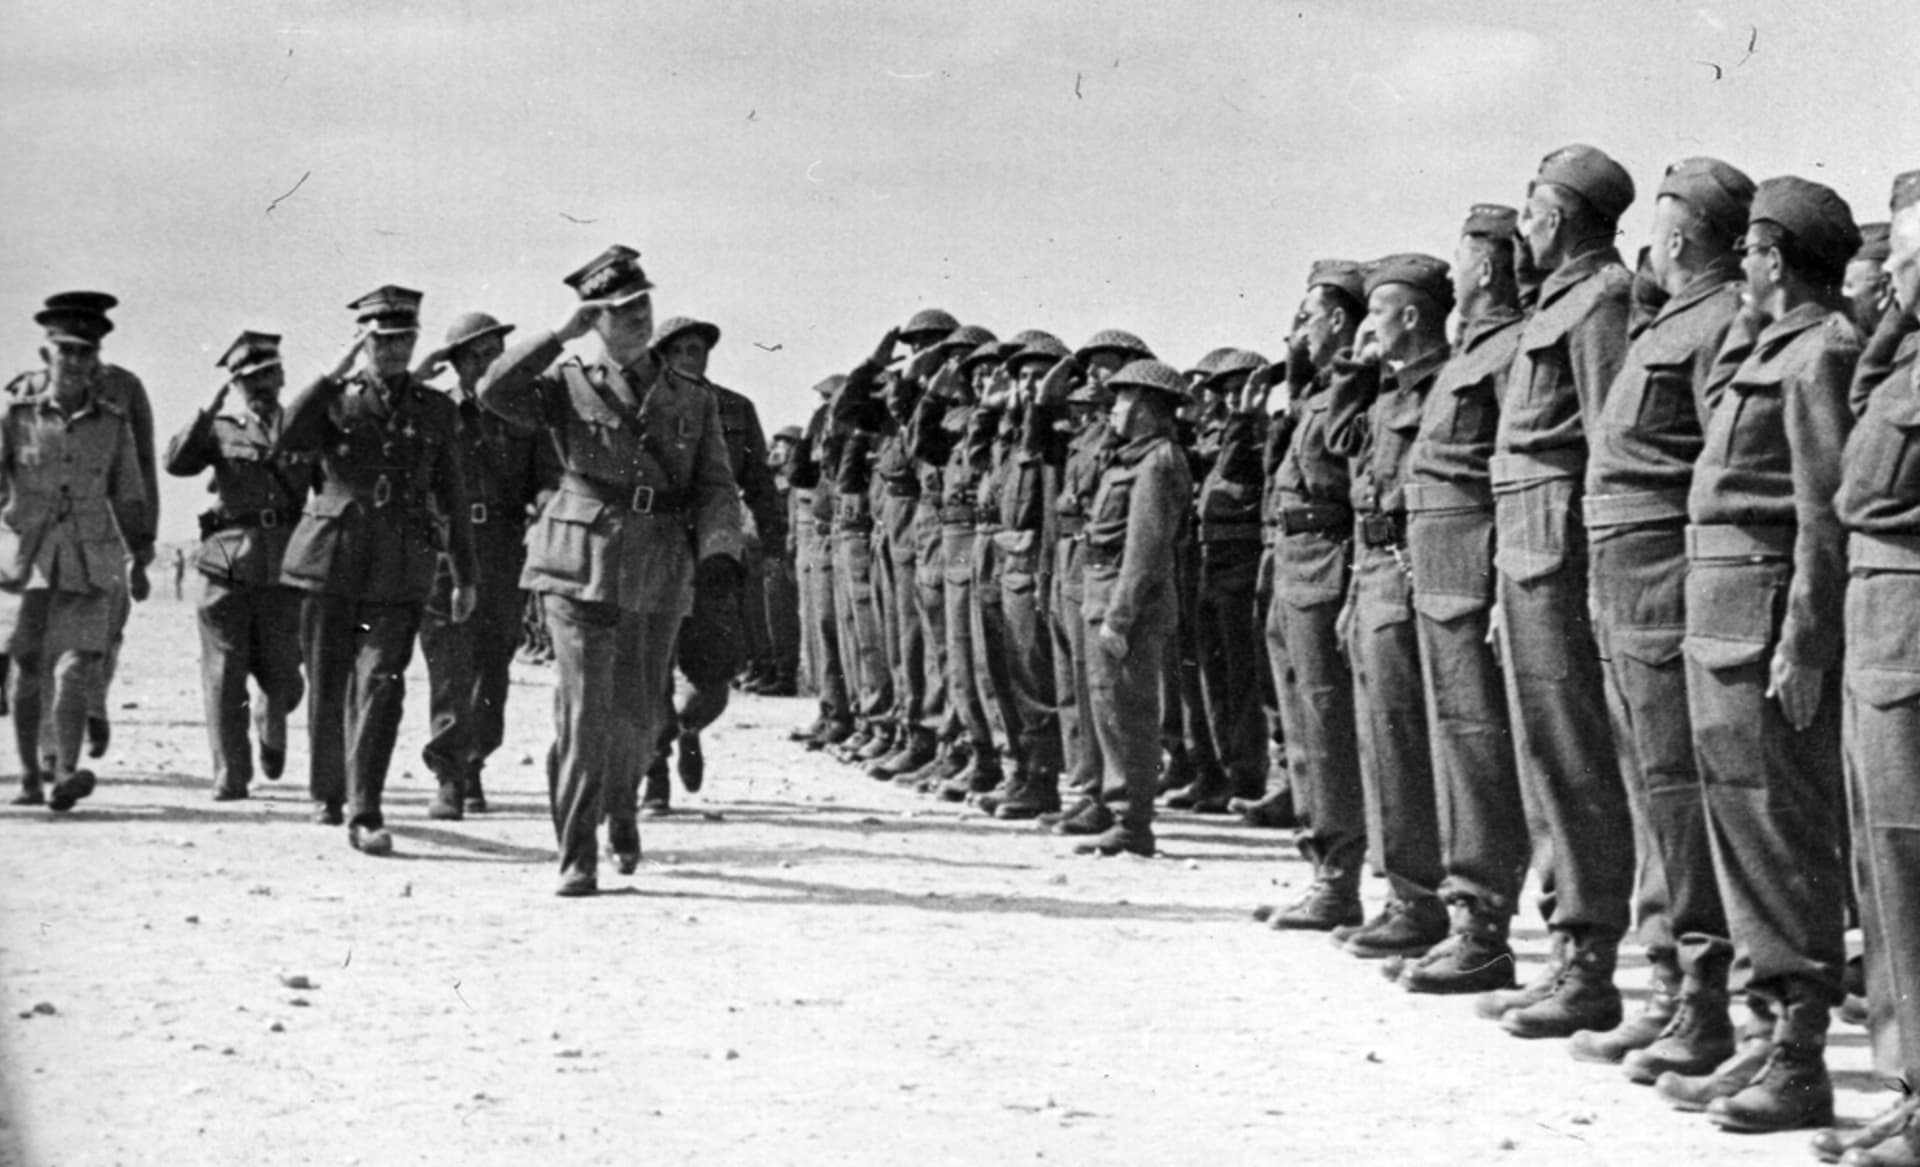 Generál Sikorski na inspekci polských vojsk v severní Africe (Tobruk, 1941)